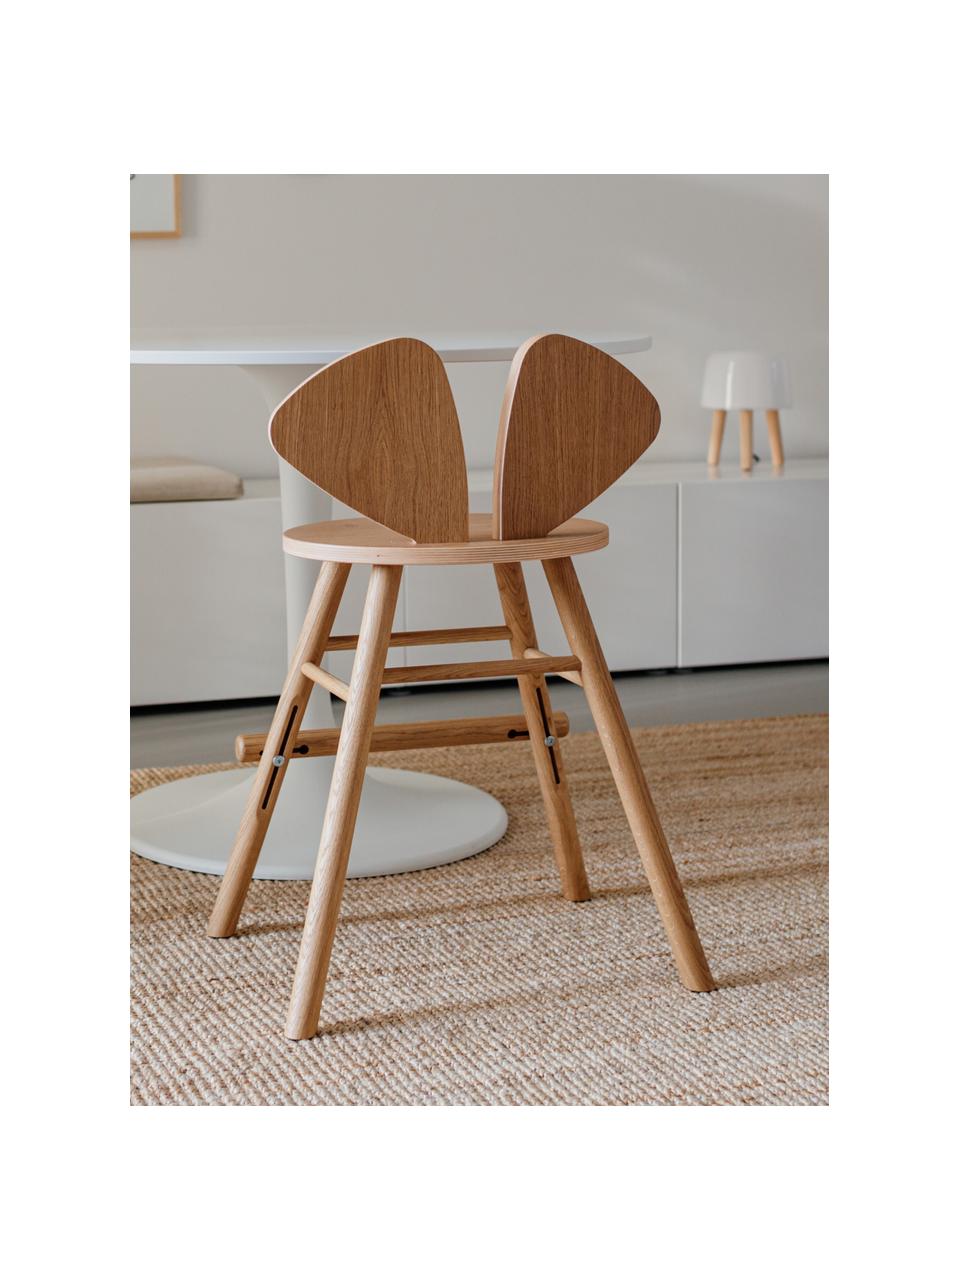 Dětská židle z dubového dřeva Mouse Junior, Dubová dýha, lakovaná

Tento produkt je vyroben z udržitelných zdrojů dřeva s certifikací FSC®., Dubové dřevo, Š 52 cm, H 41 cm